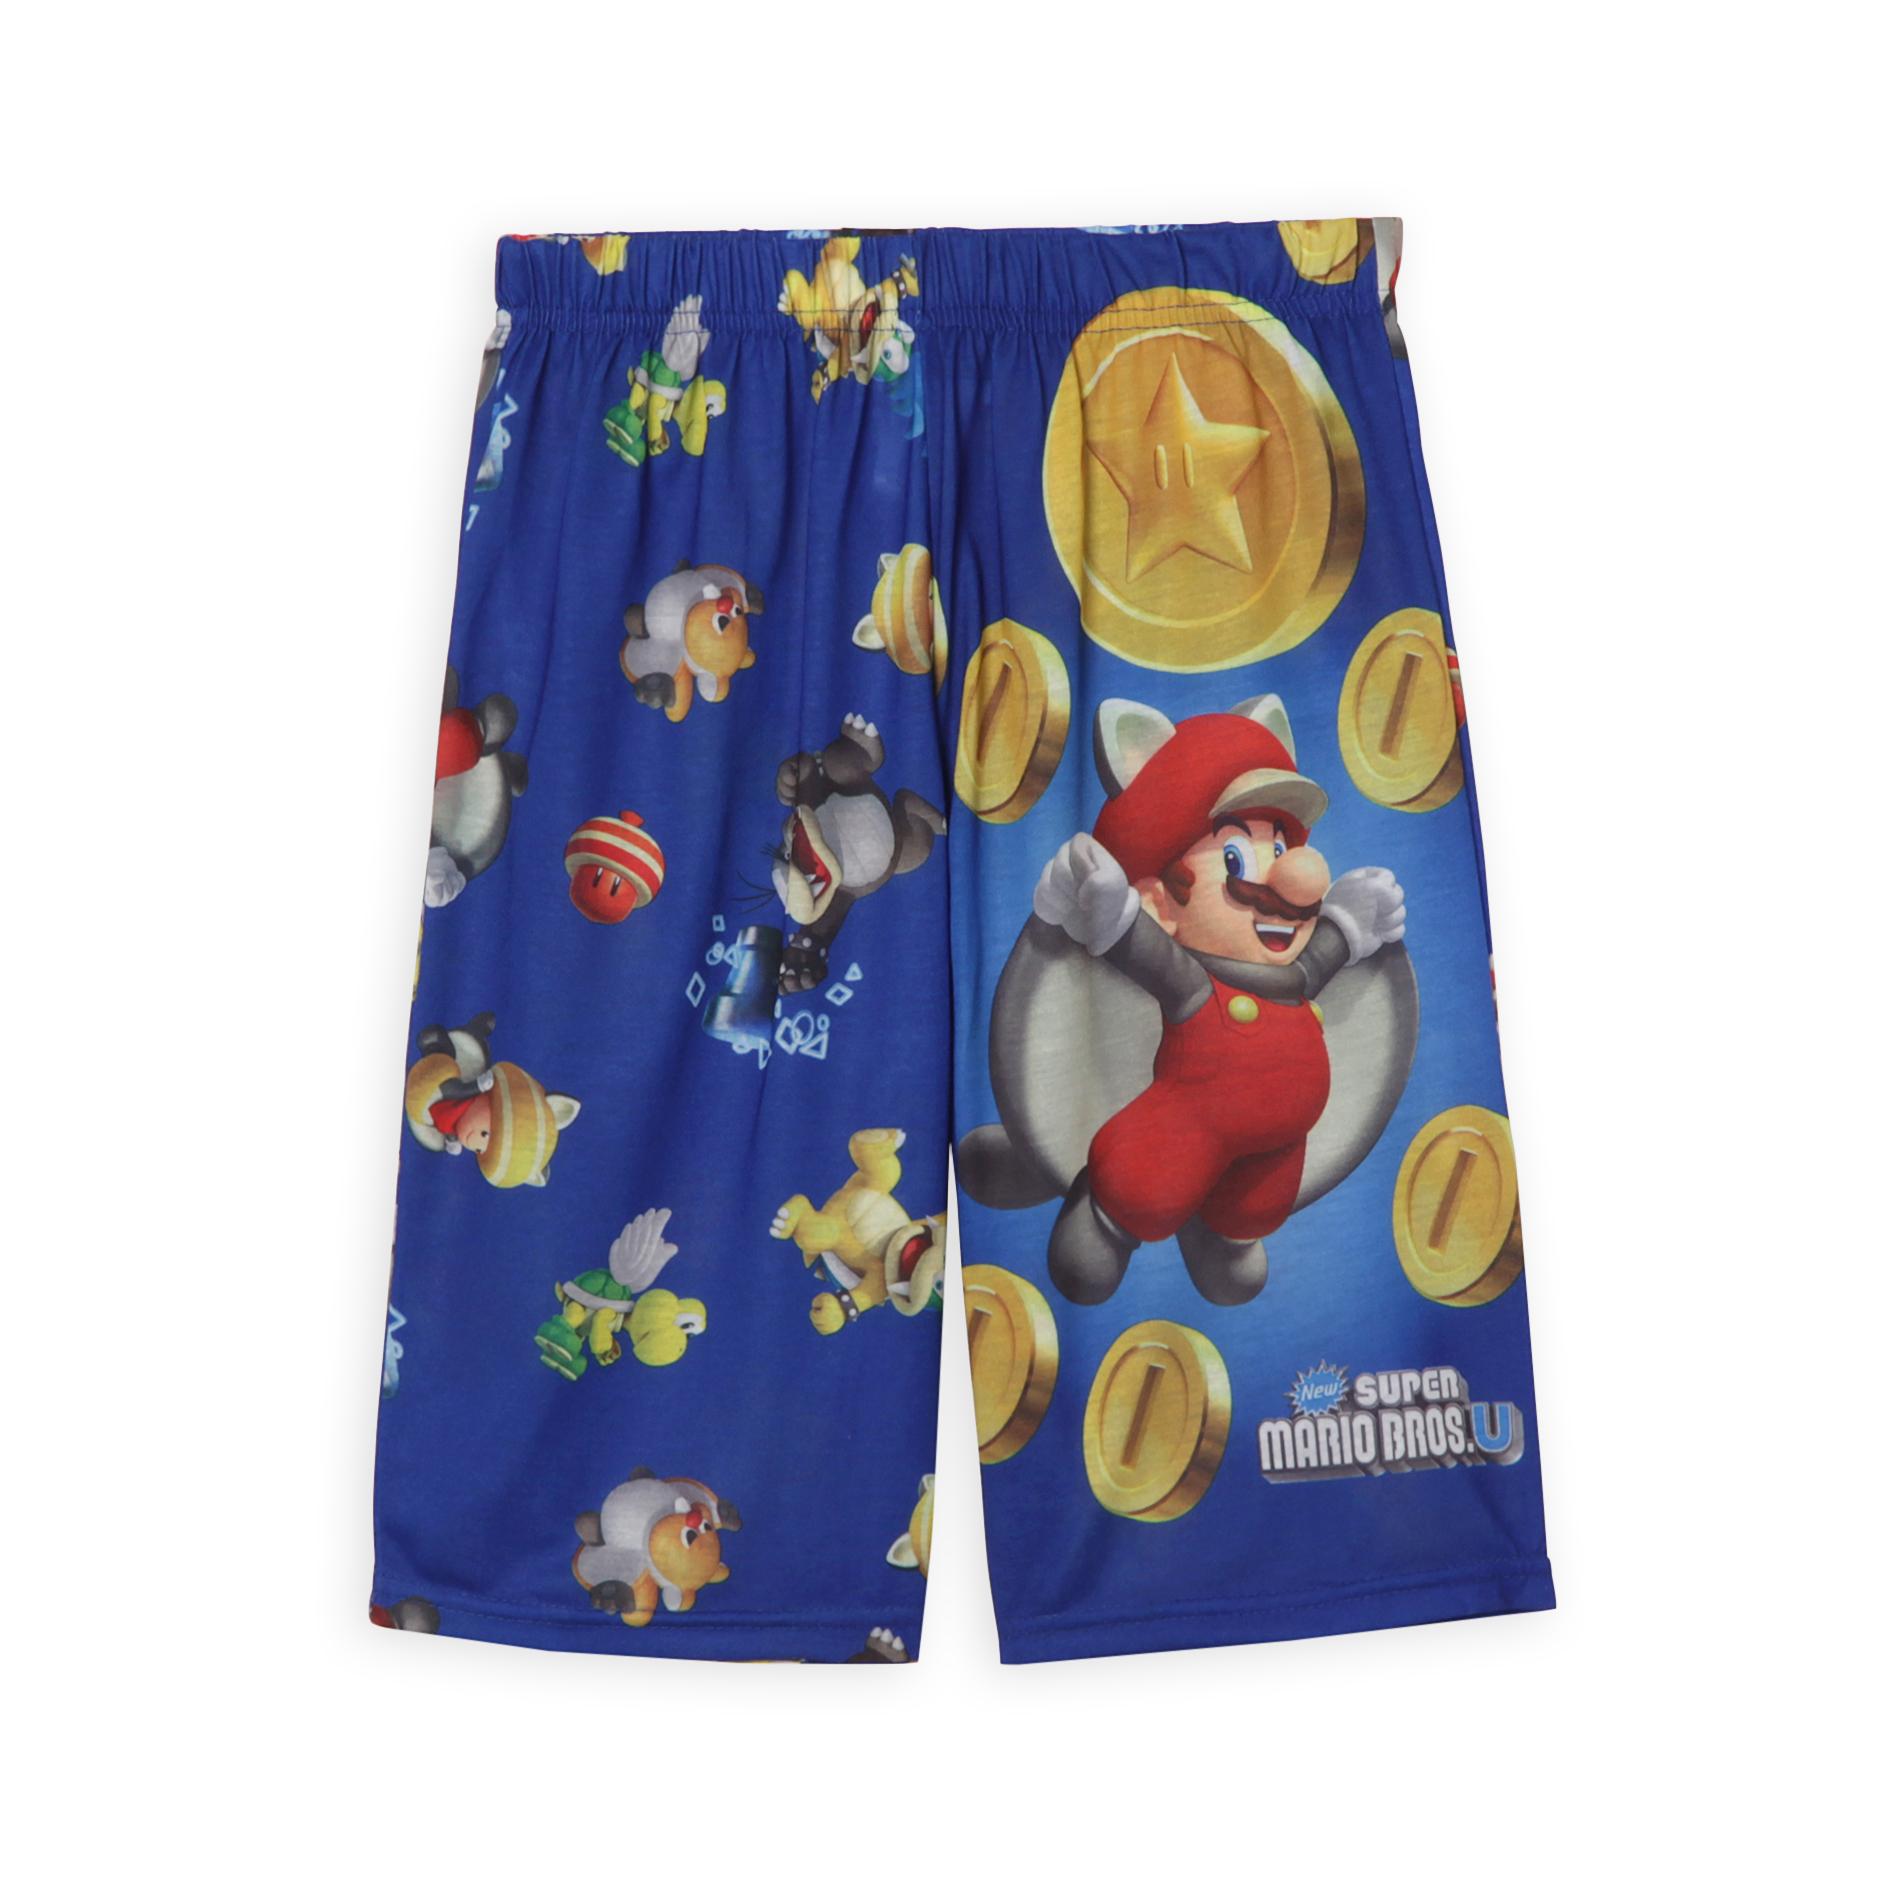 Nintendo Super Mario Bros. U Boy's Pajama Shorts